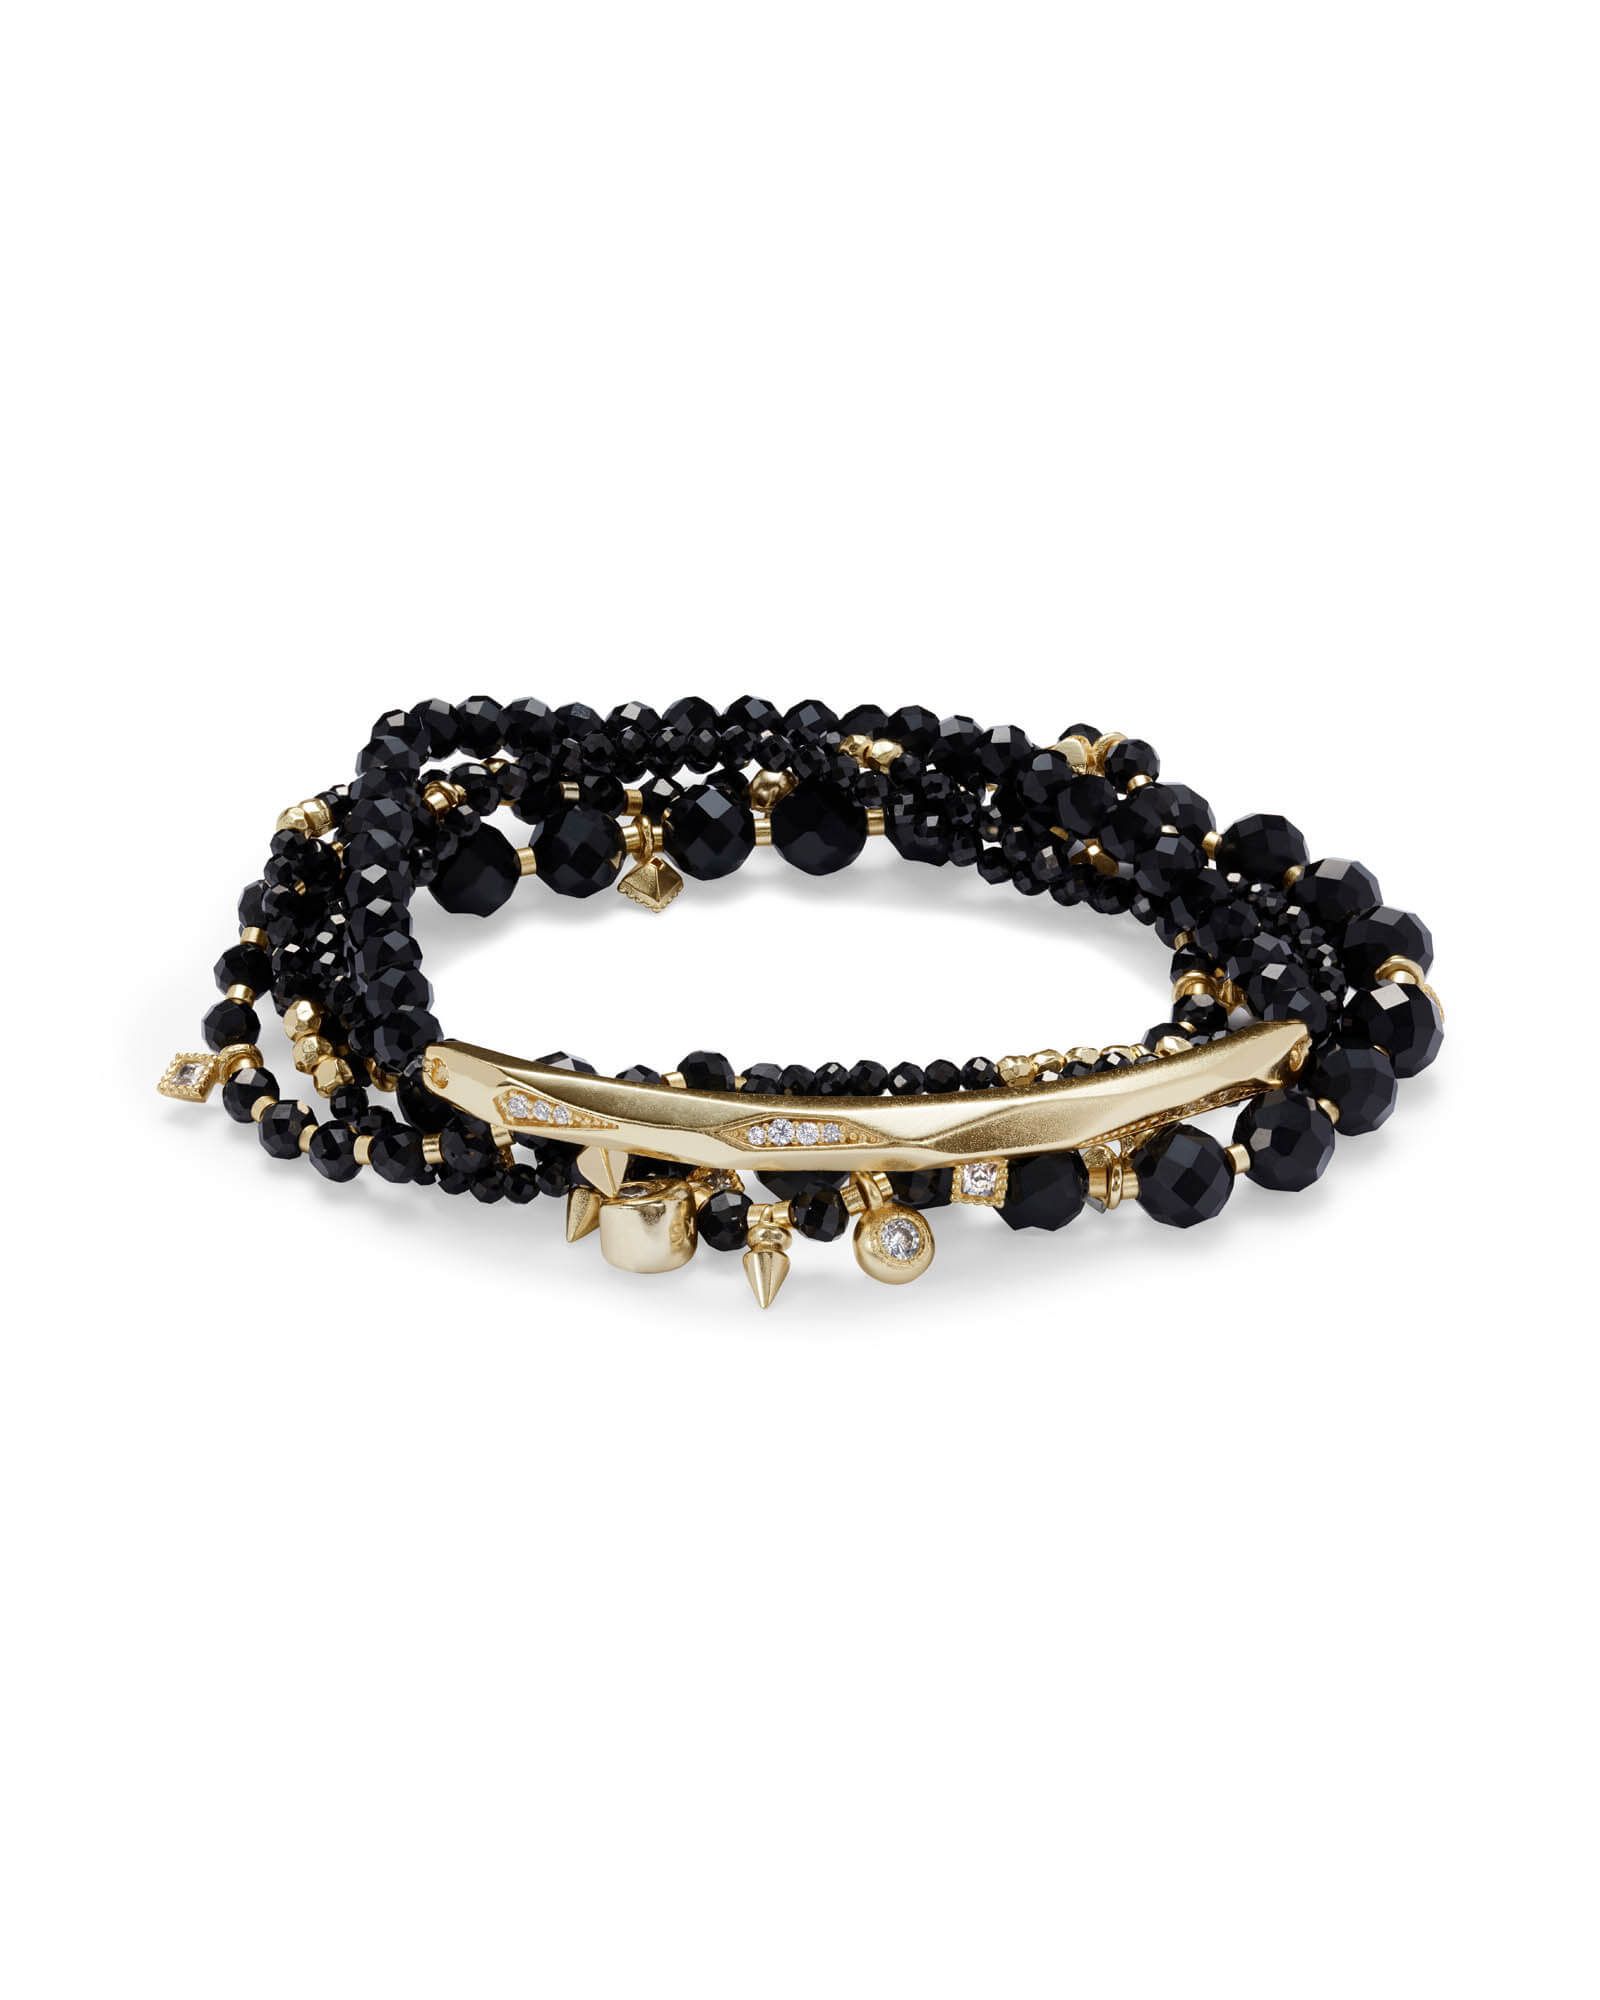 Supak Gold Beaded Bracelet Set in Black Spinnel | Kendra Scott | Kendra Scott